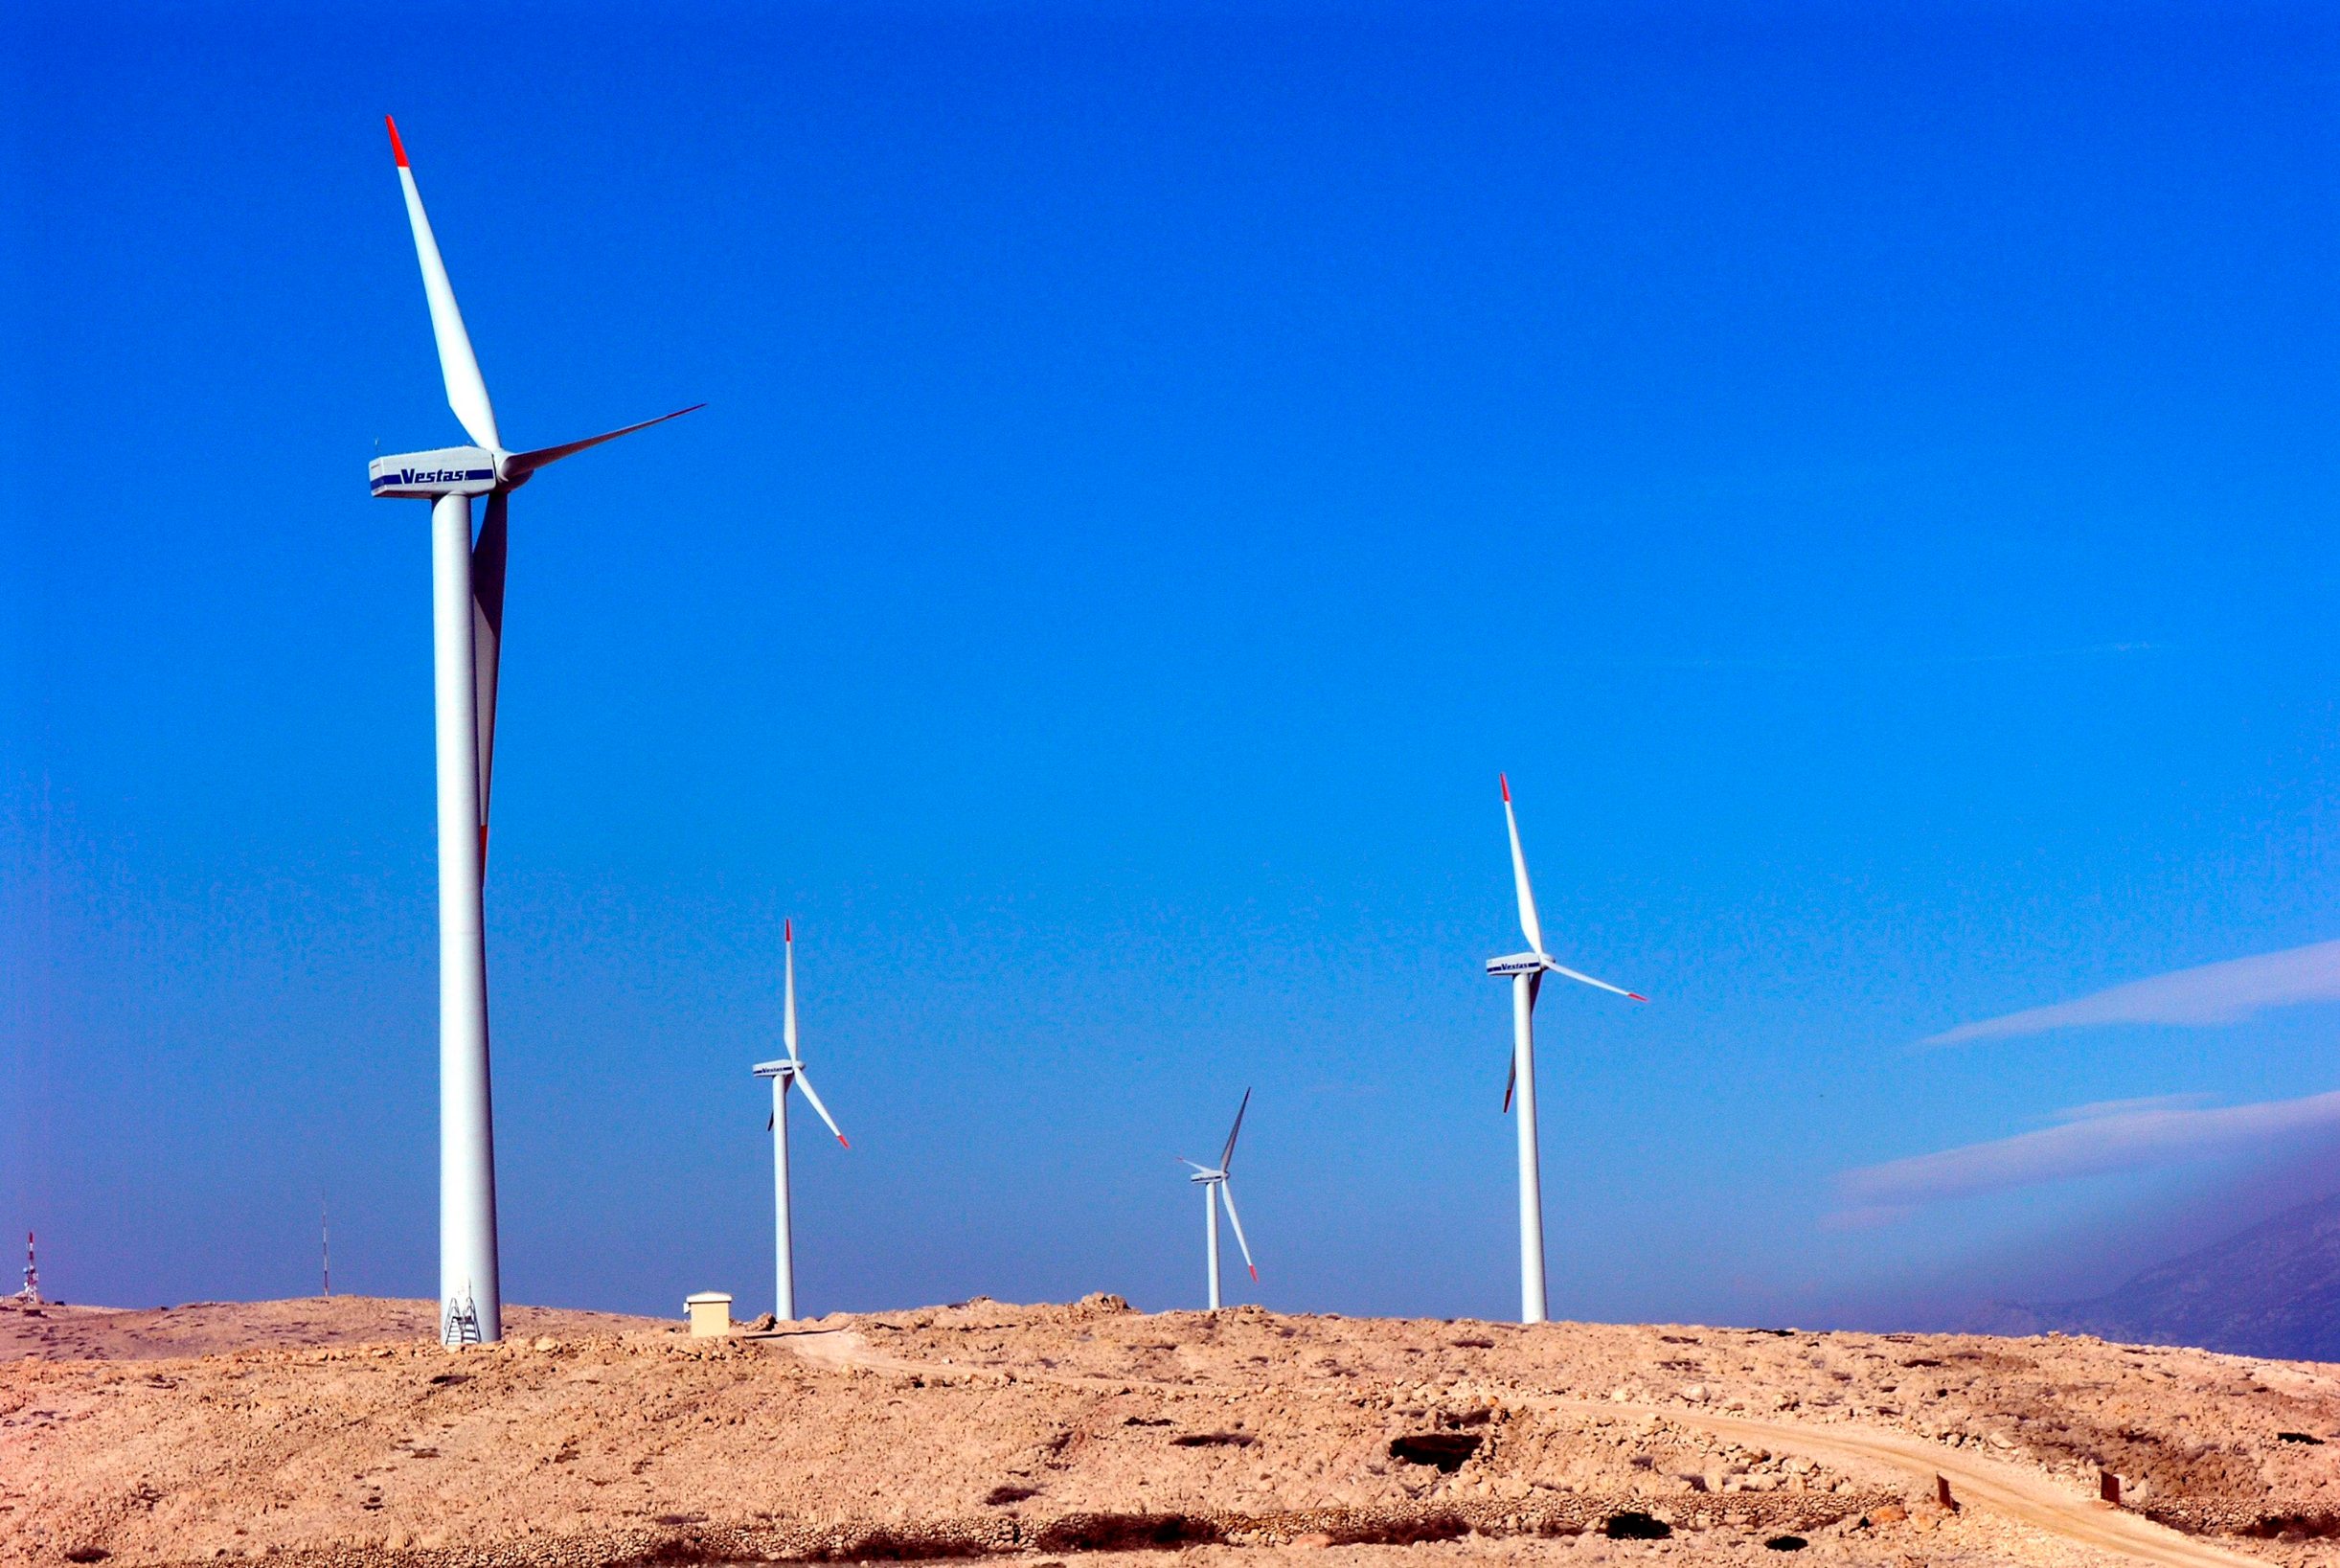 Pag, 271009.
Firma Adria Wind Power na predjelu Ravne iznad Paga, uz postojecih 7, moze graditi jos do maksimalno 9 vjetroelektrana s obzirom da je projekt bio zavrsen prije Uredbe Vlade RH o zastiti mora i priobalja po kojoj se vjetroelektrane na otocima vise ne smiju graditi.
Pag ce tako imati ukupno 16 vjetroelektrana i ukoliko se Uredba ne promijeni ostati jedini otok u Hrvatskoj s vjetroelektranama. Vjetroelektrane se vide iz Grada Paga, no ne stavaraju nikakvu buku, uklopile su se u otocnu vizuru i smatraju se turistiskom atrakcijom.
Foto: Dijana Vuleta / EPEHA / CROPIX